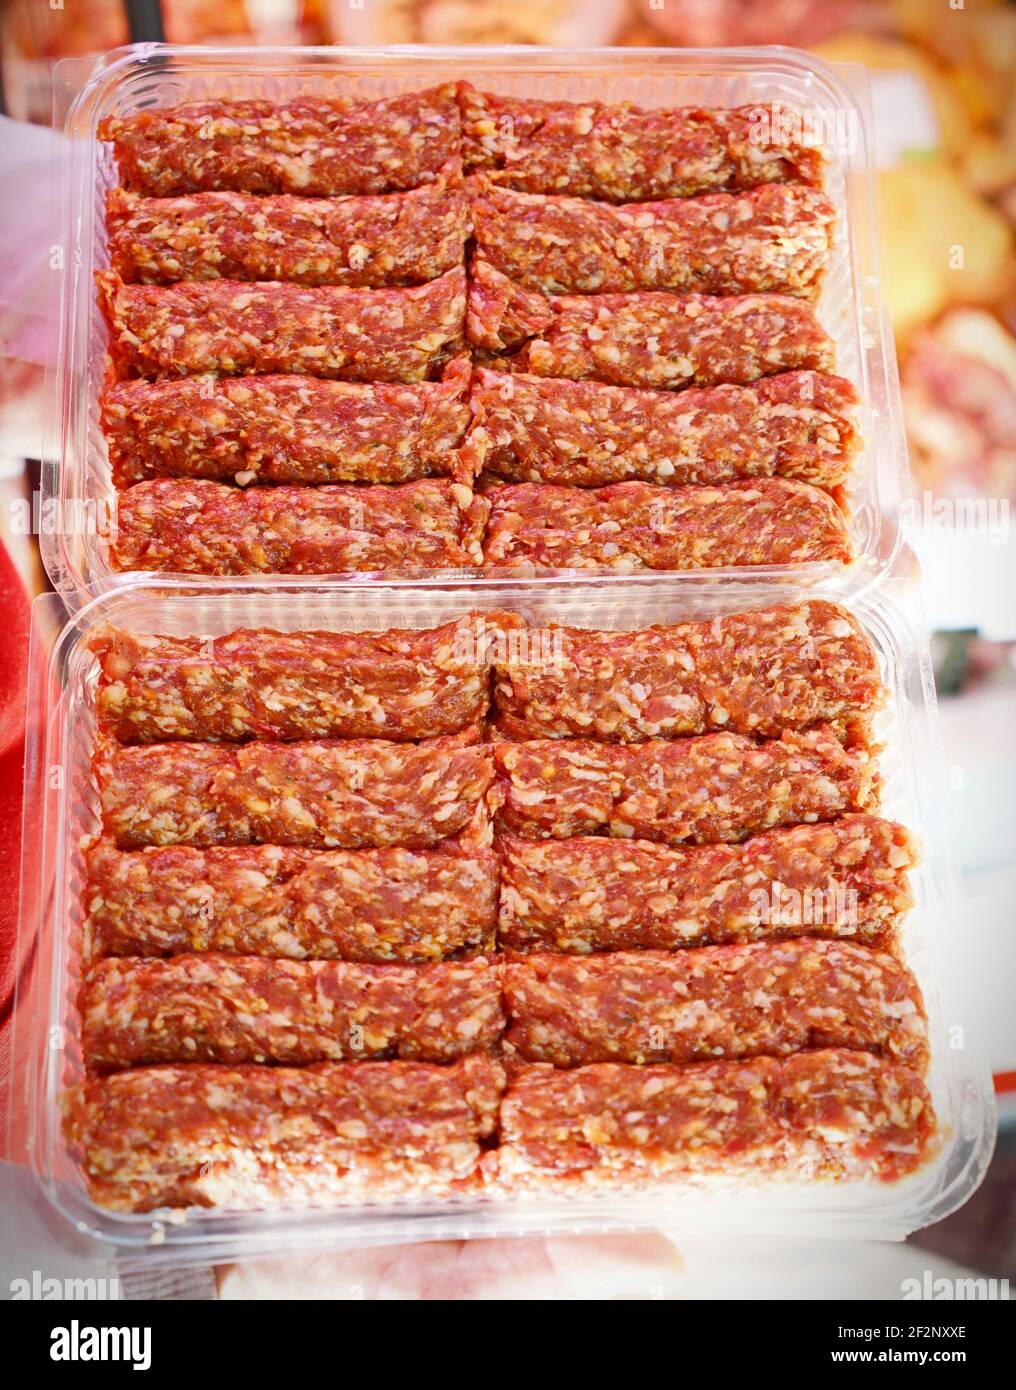 Rumänische rohe Fleischbrötchen namens mititei, mici - close-up. Rumänisches traditionelles Essen Stockfoto